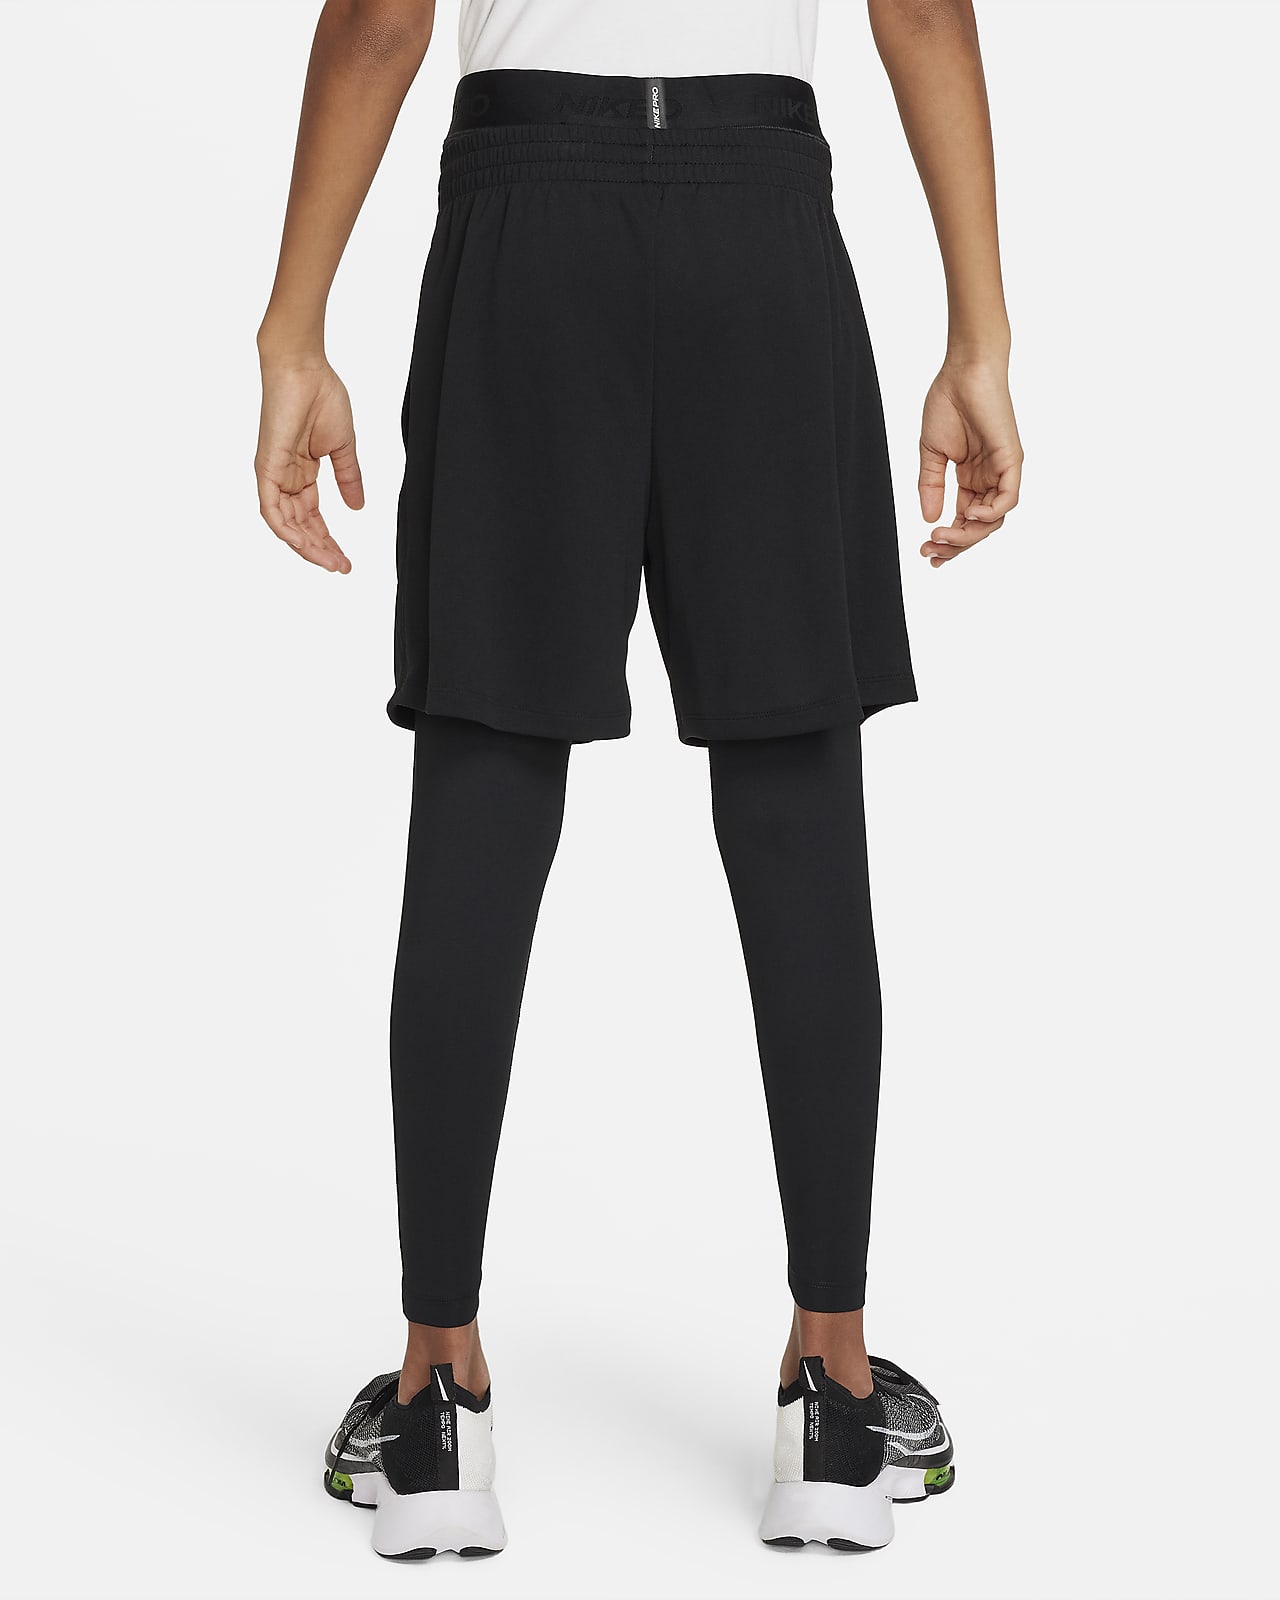 NIKE BLACK PRO DRI-FIT LEGGING  Workout leggings, Black nikes